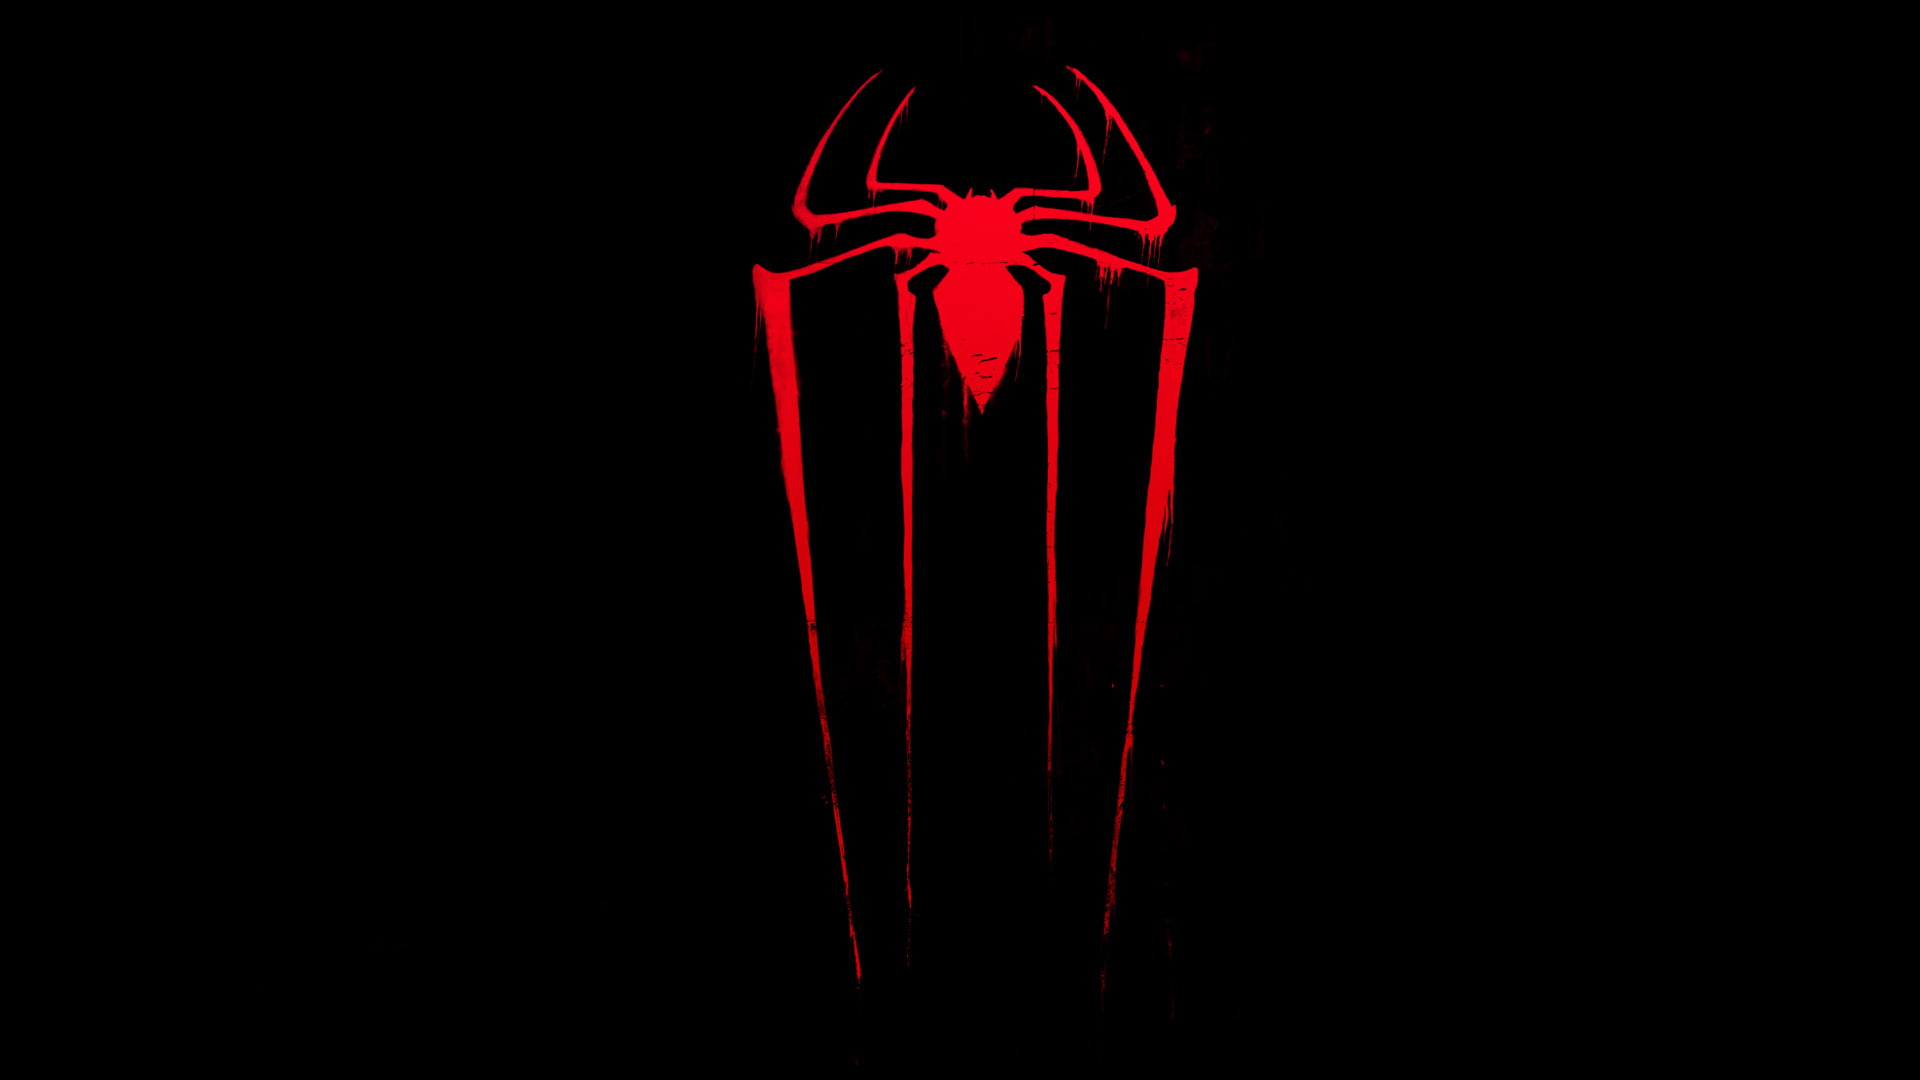 Marvel Spider-Man logo, dark, red, amazing spider-man, the amazing spider-man